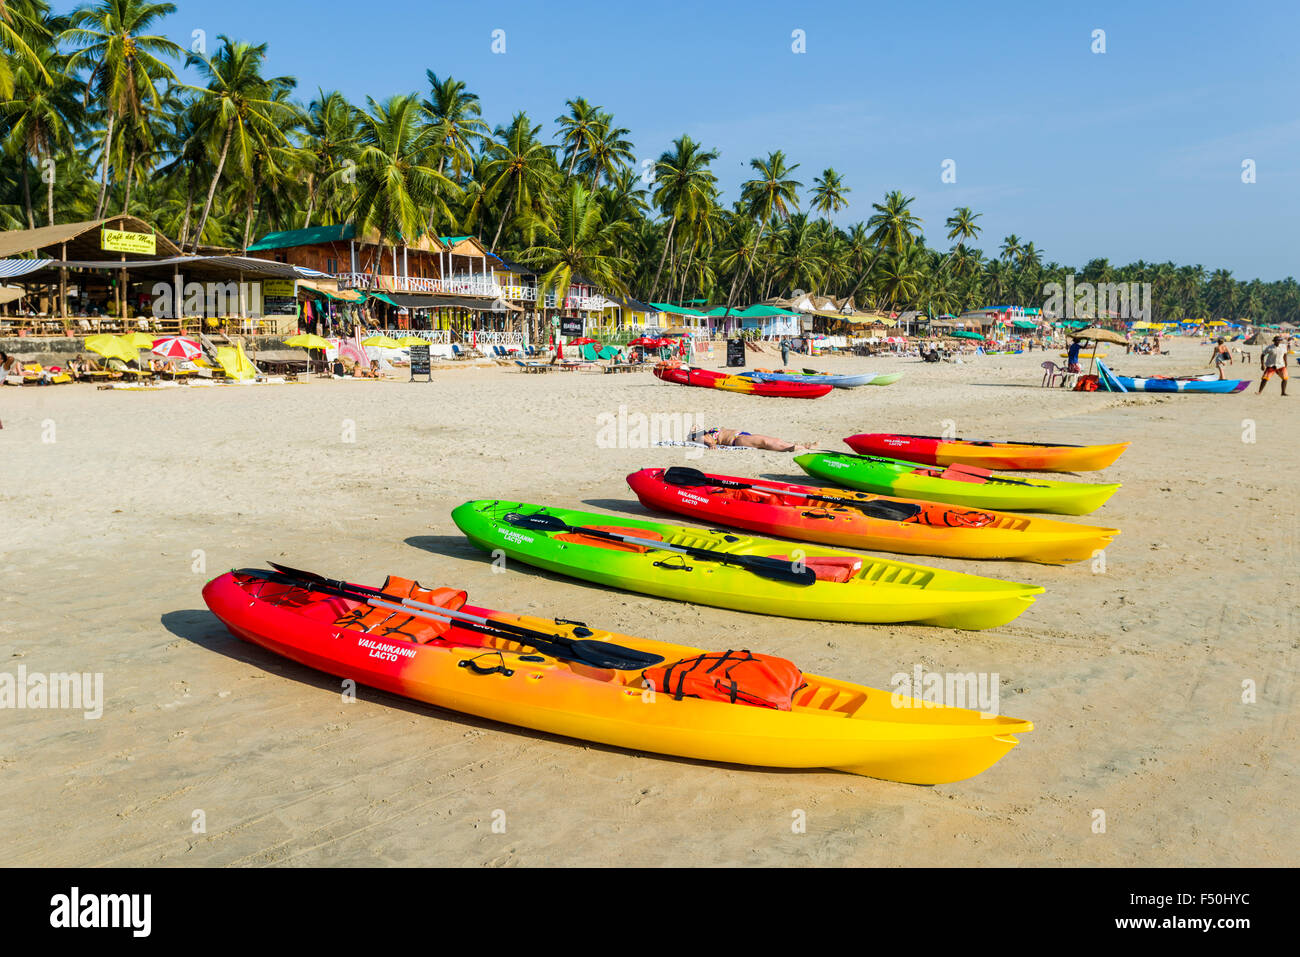 Certains kayaks colorés sont à louer à la plage de Palolem avec ciel bleu, de palmiers et de sable blanc Banque D'Images